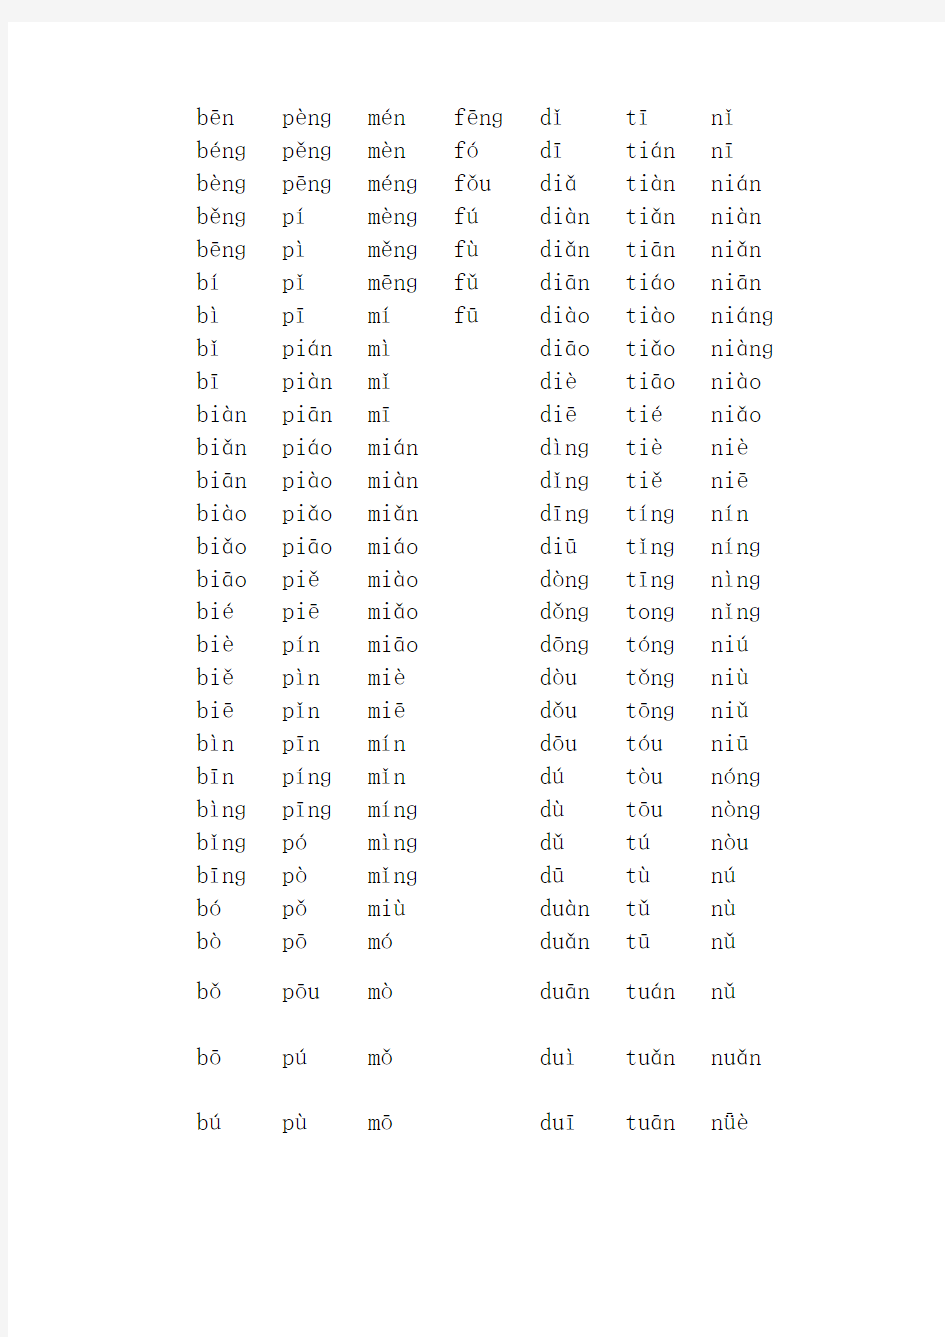 汉语拼音音节表(带声调)